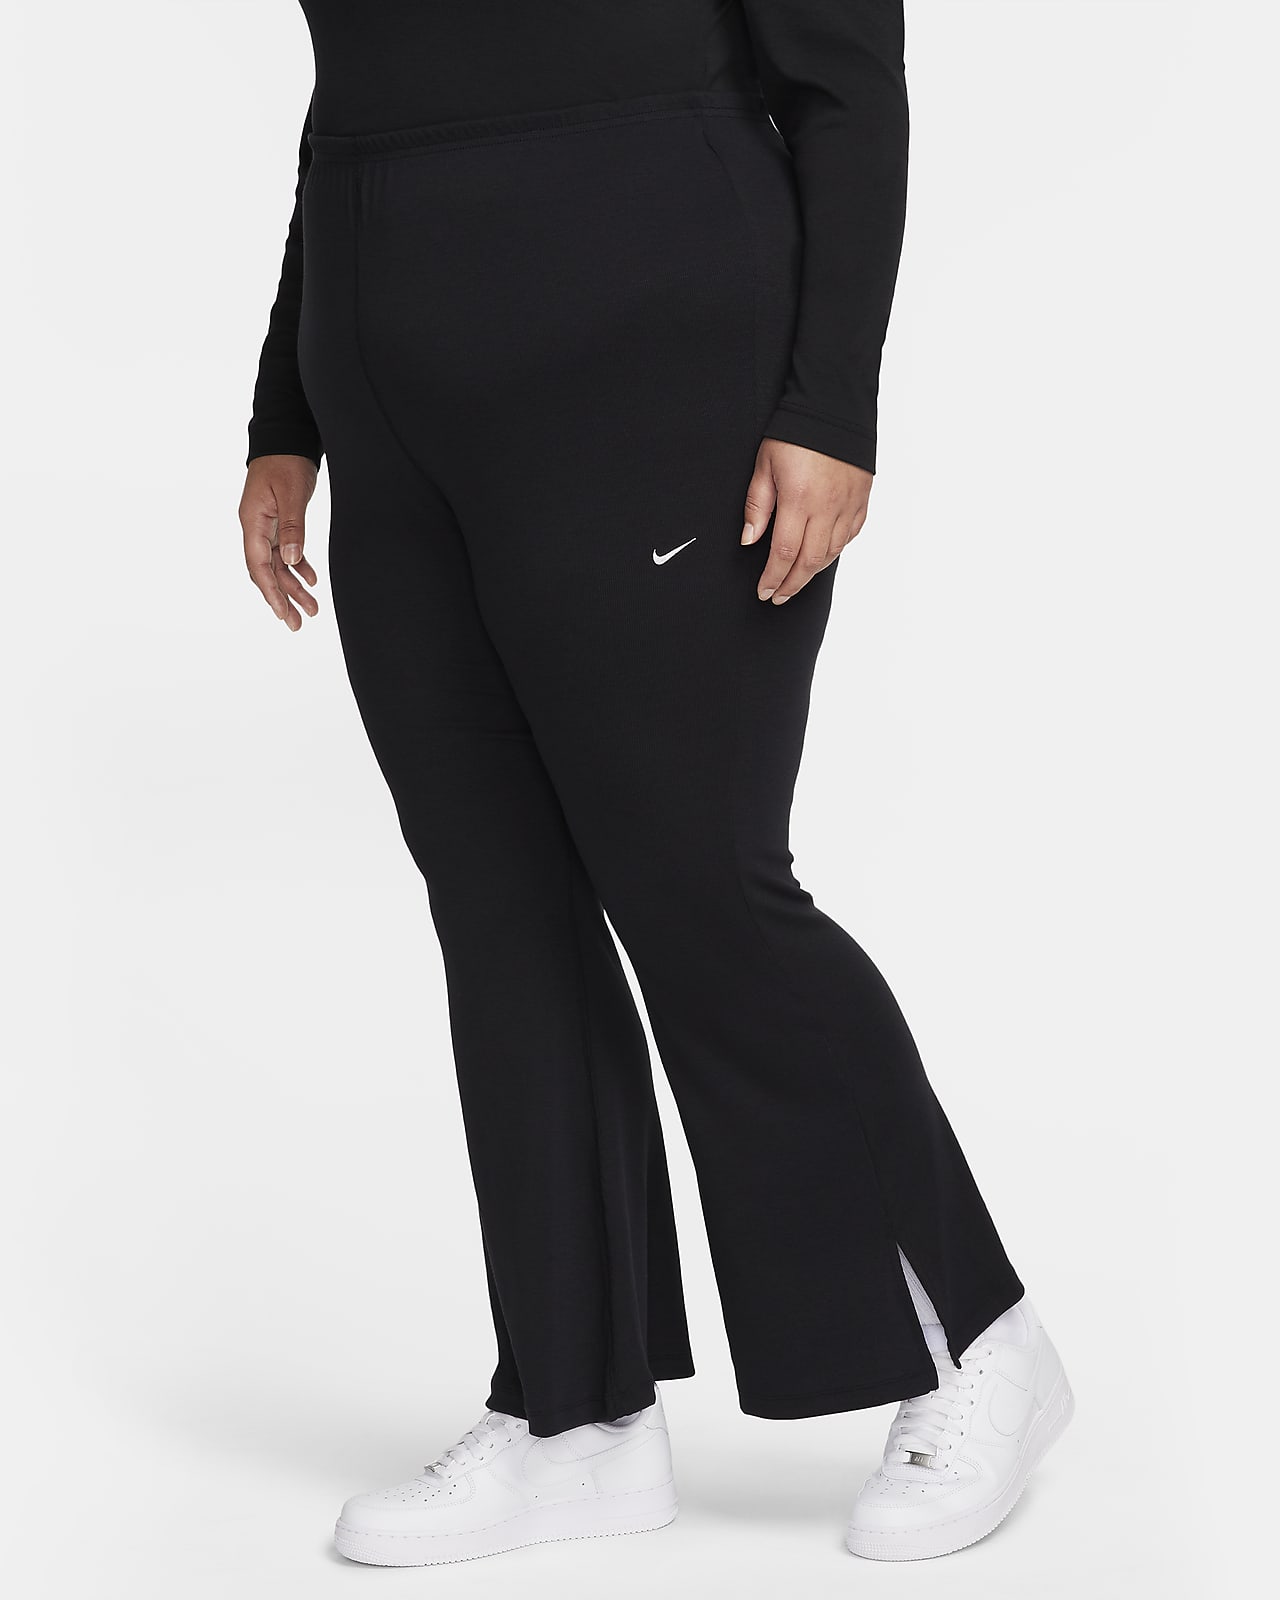 Damskie obcisłe legginsy w drobny prążek z rozszerzanymi nogawkami Nike Sportswear Chill Knit (duże rozmiary)